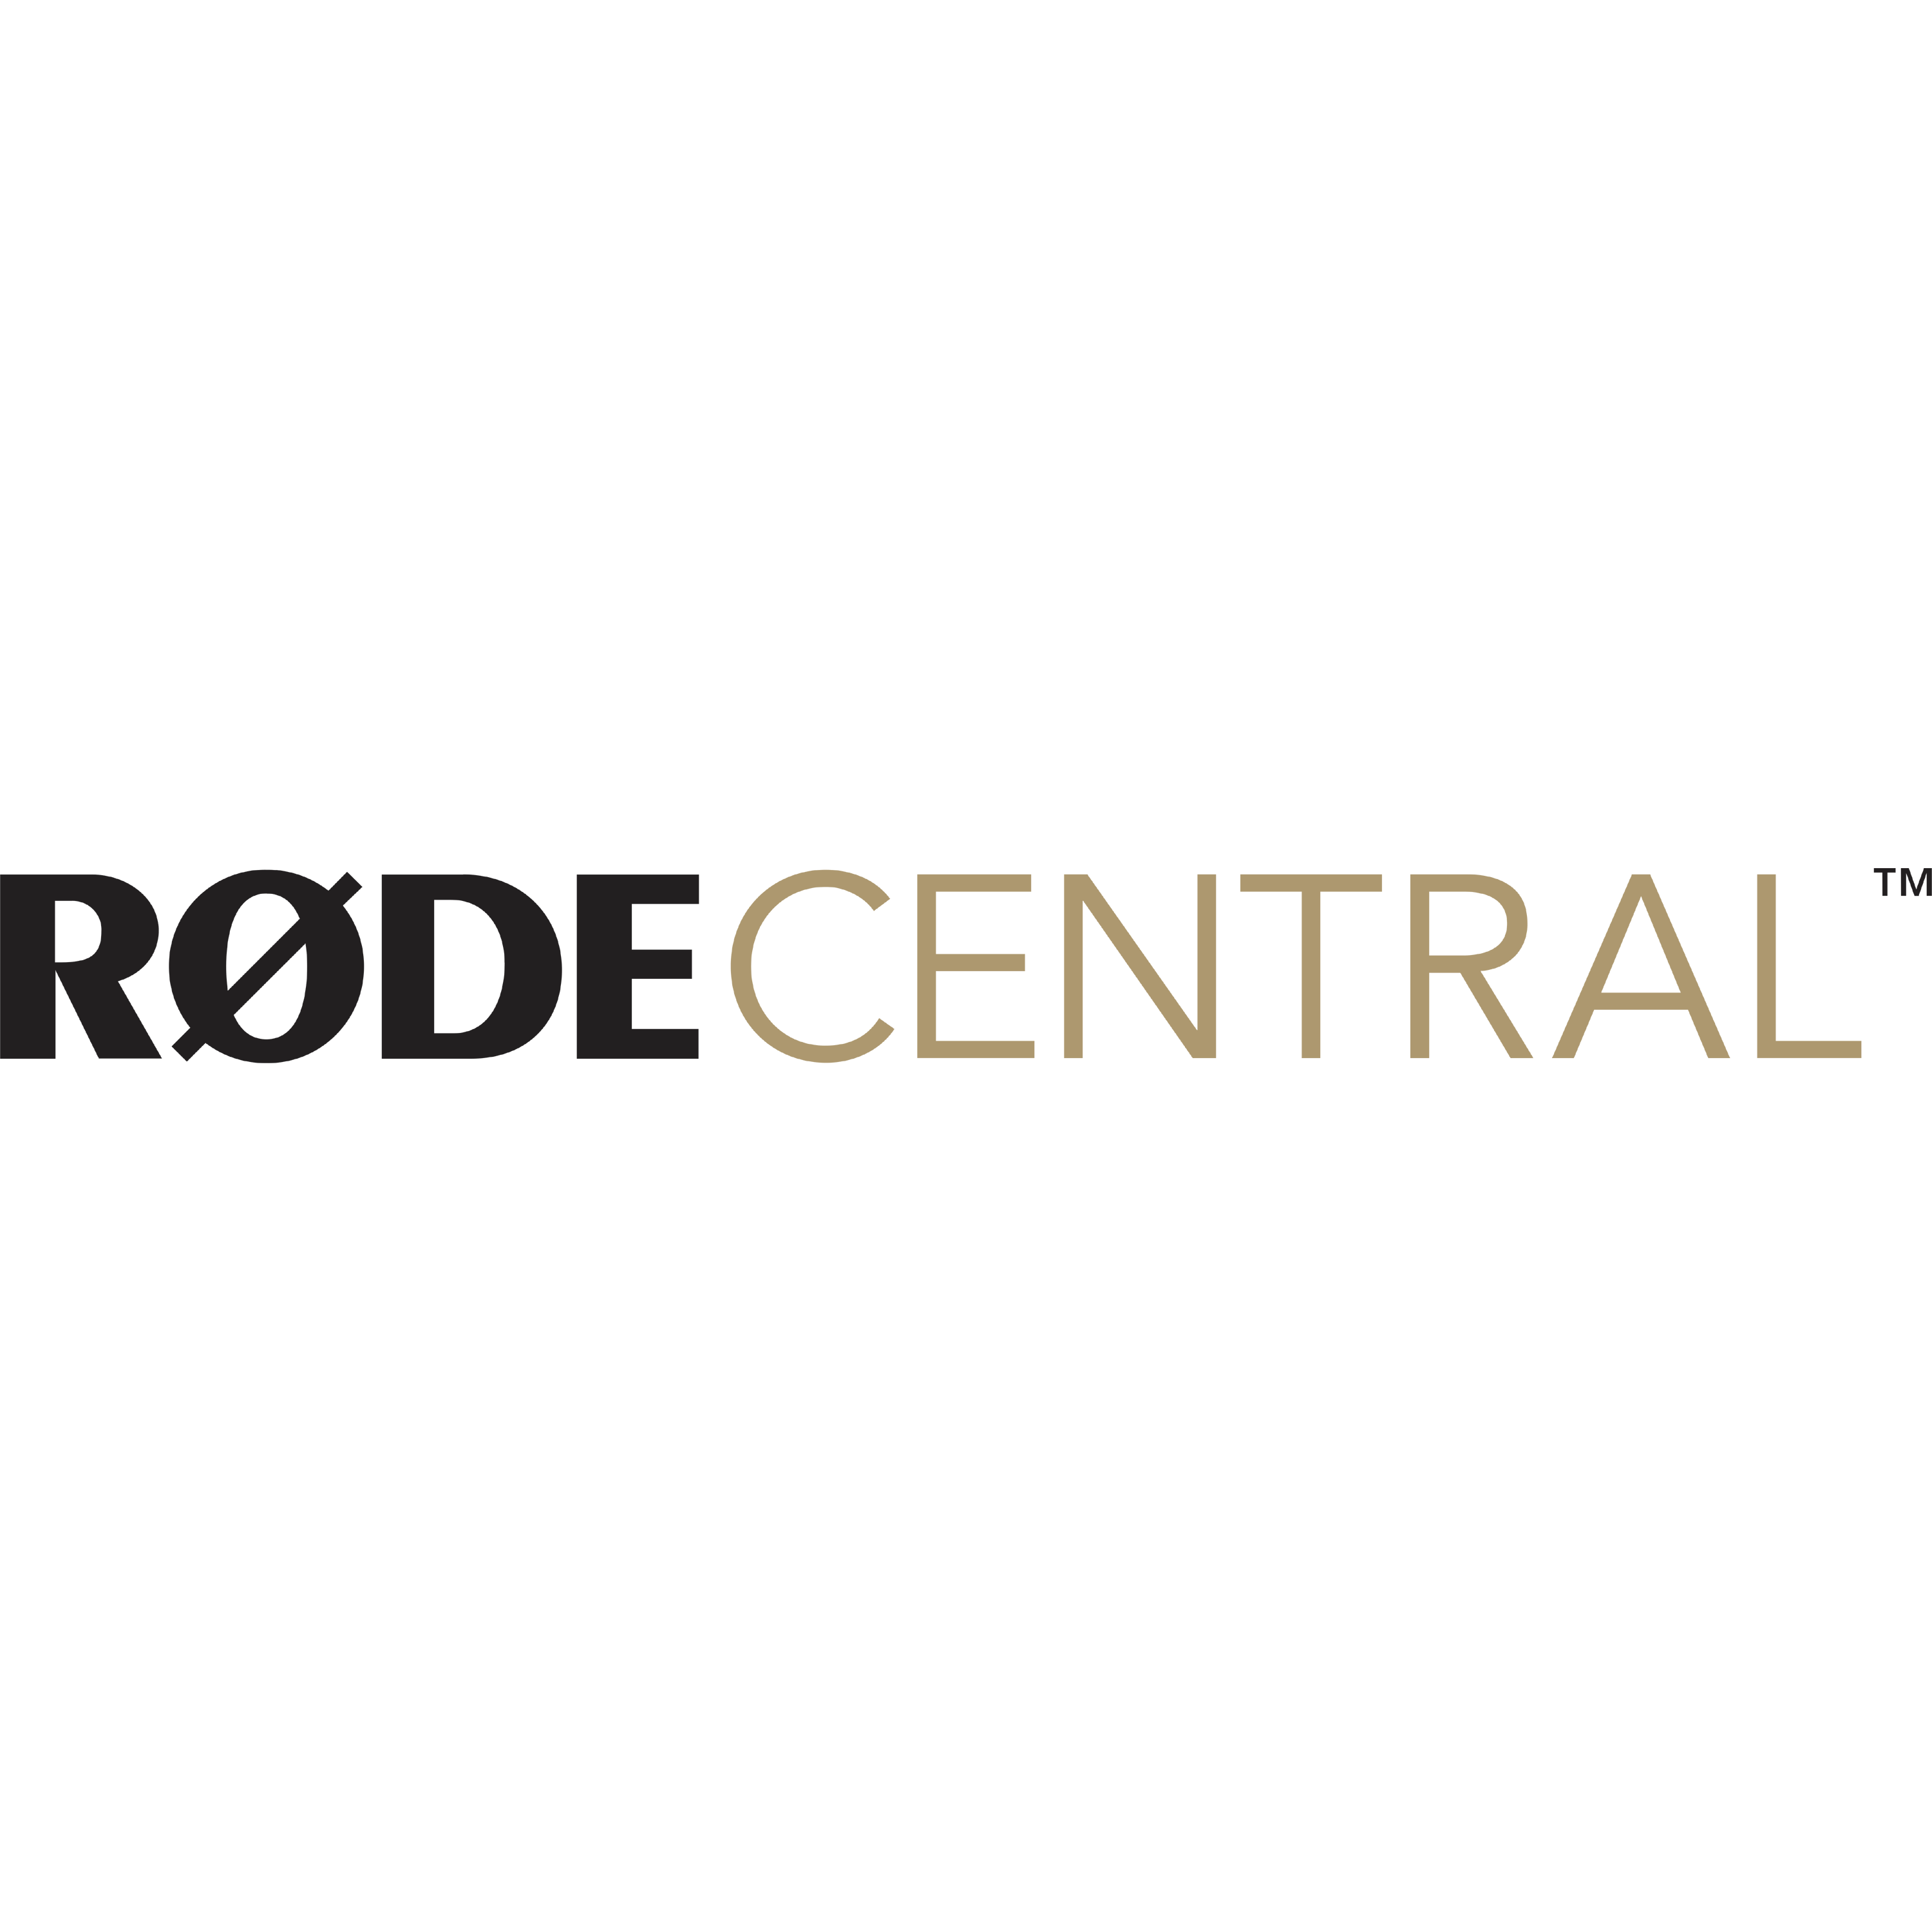 Rode Central Logo Transparent Image